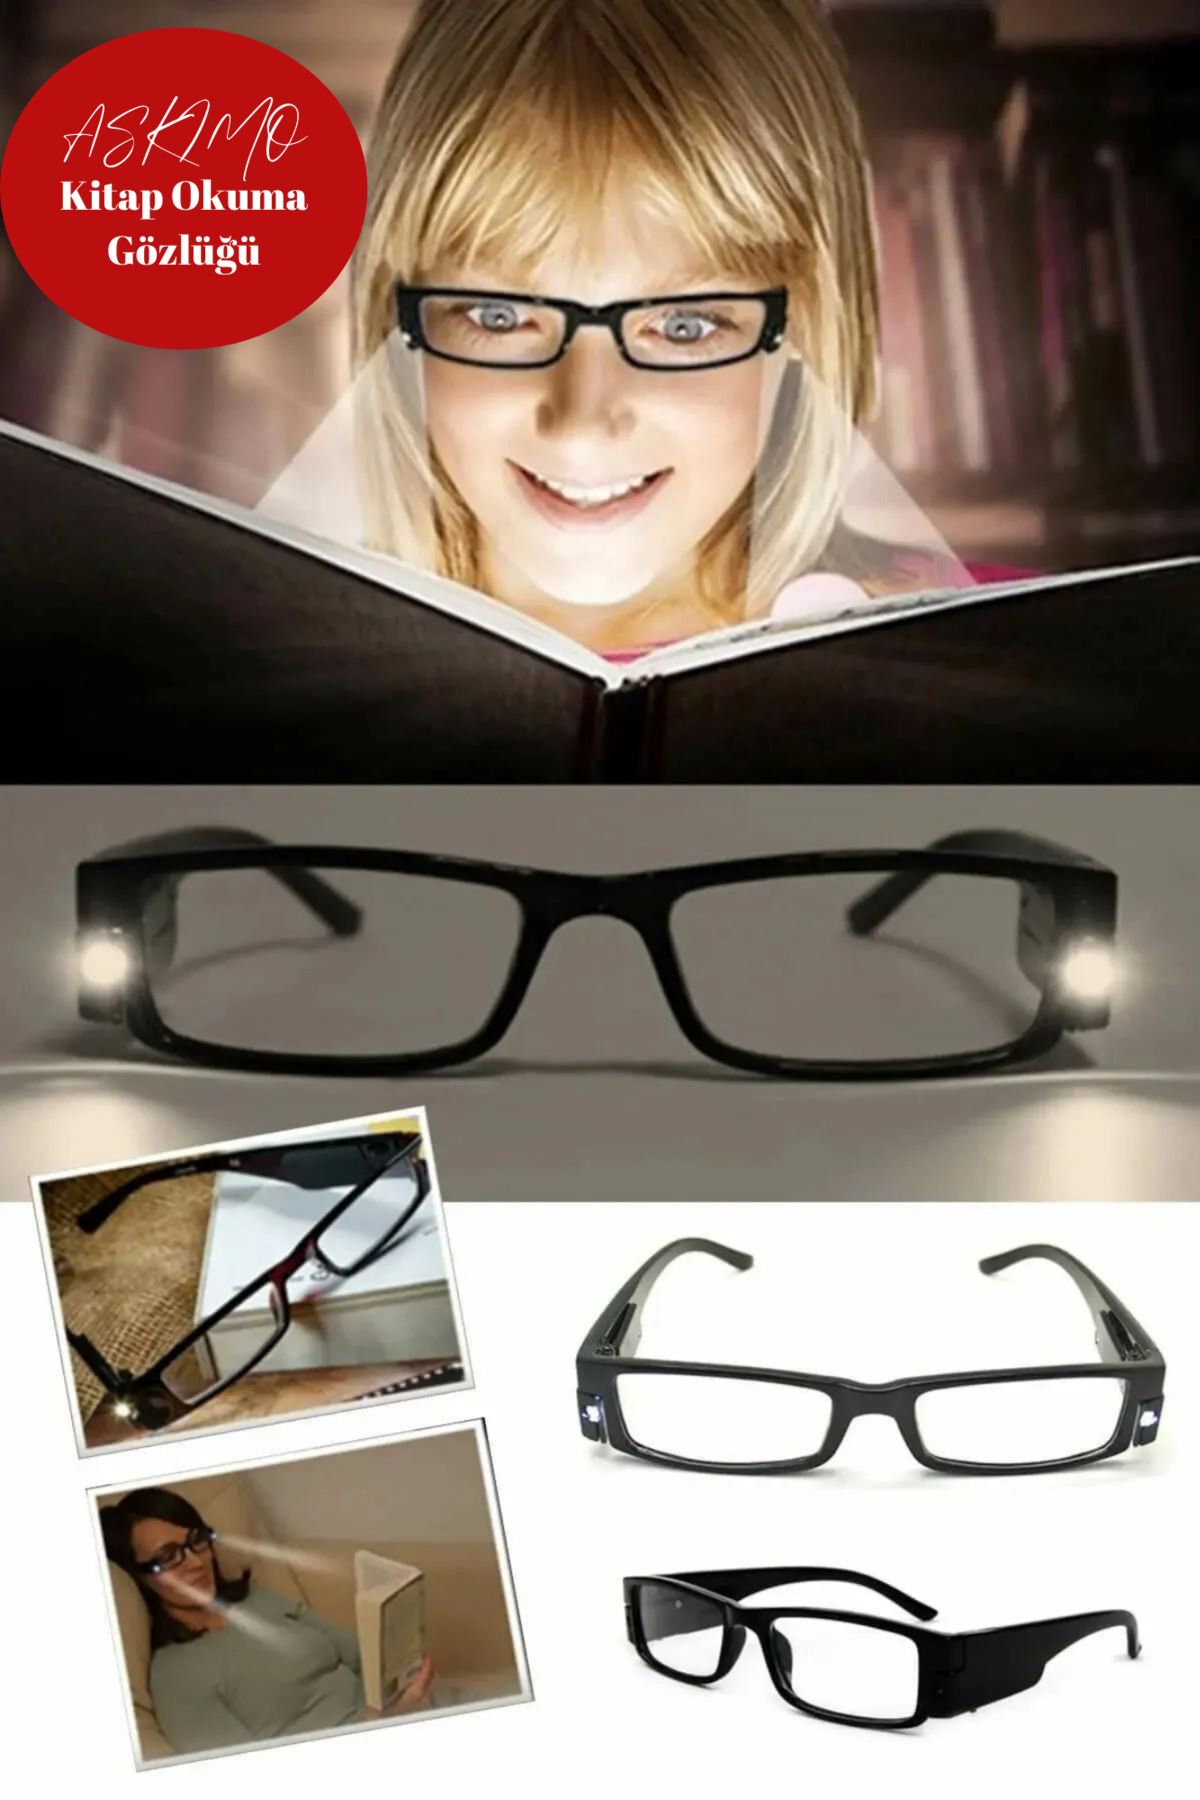 Askımo Kitap Okuma Gözlüğü Led Işıklı Kitap Okuma Gözlüğü Camsız